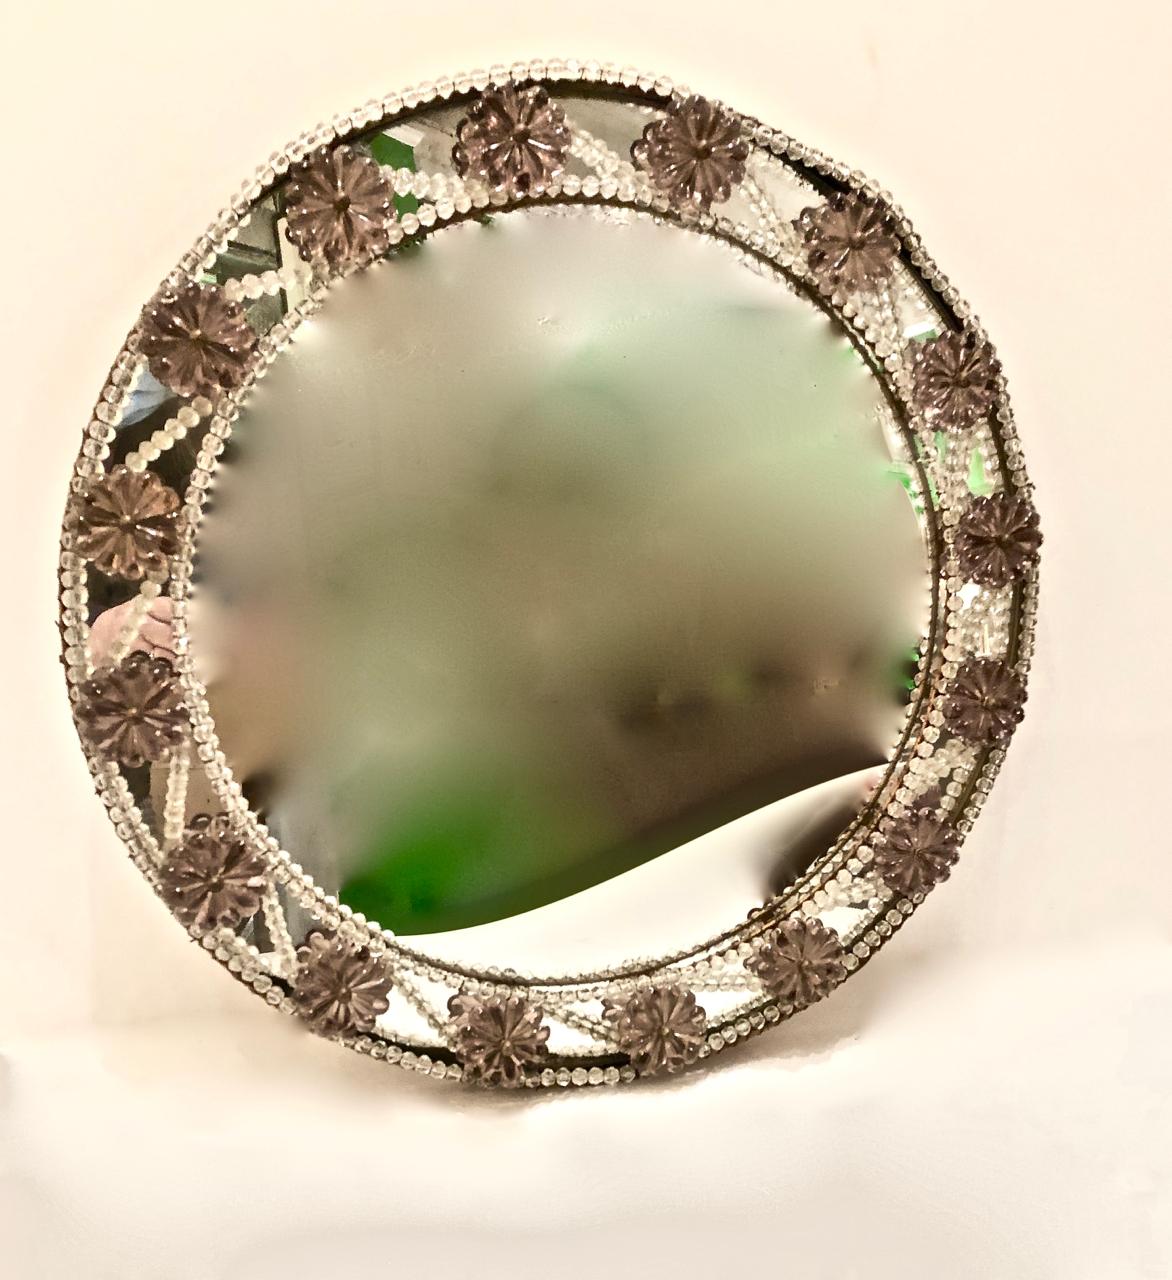 Il s'agit d'une paire inhabituelle de miroirs ronds perlés de Murano datant du début ou du milieu du 20e siècle, magnifiquement décorés de fleurons d'améthyste. Les deux miroirs sont en très bon état général. La dernière photo montre l'un des